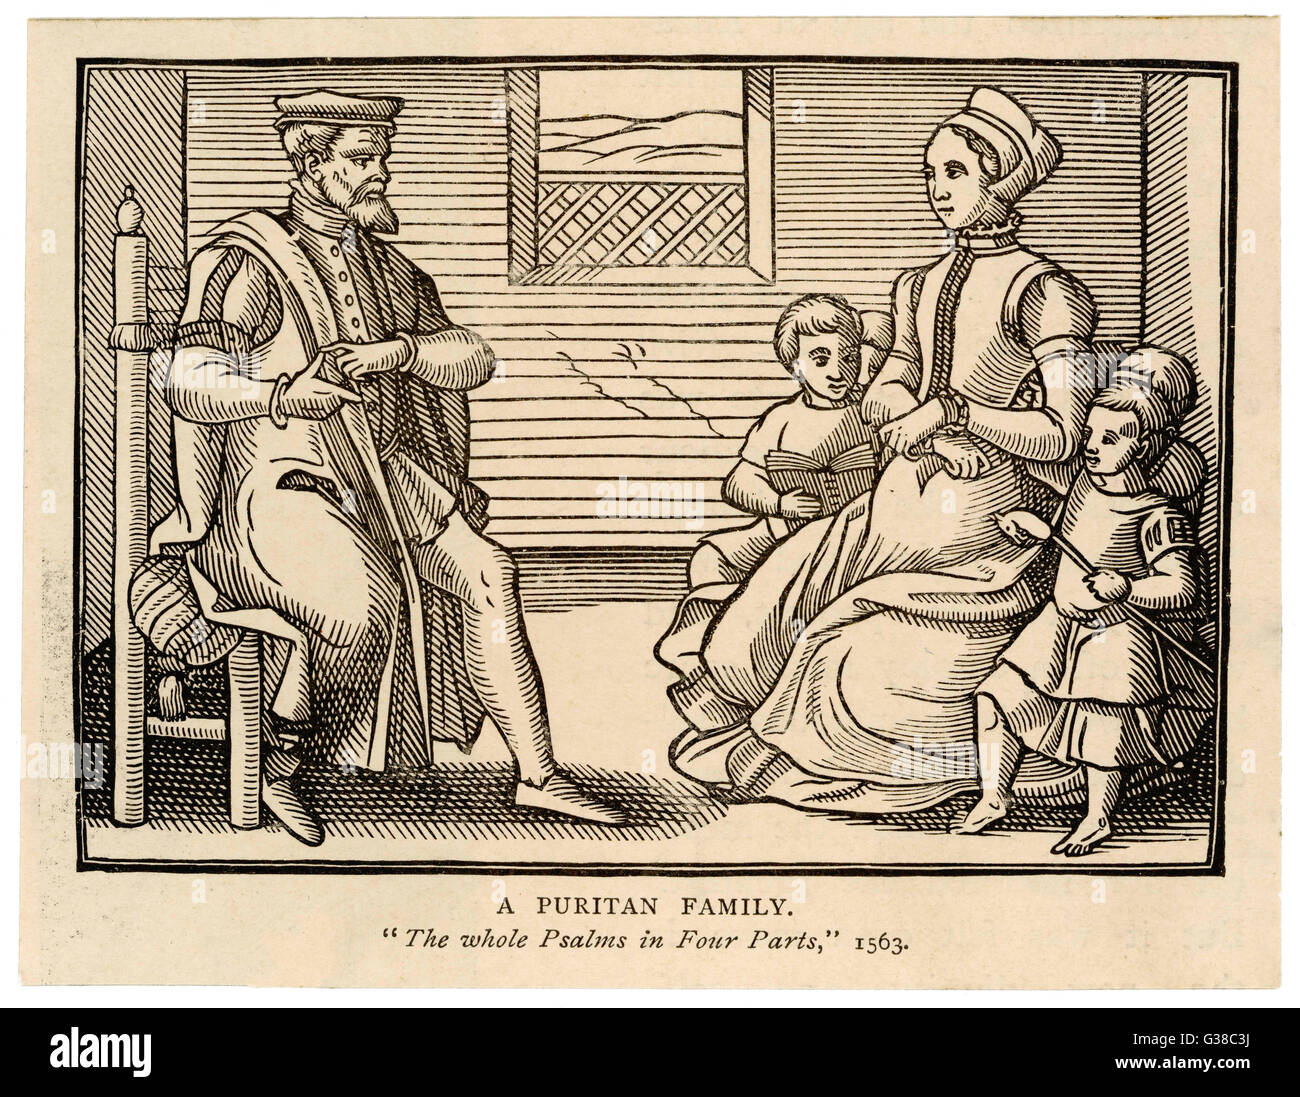 Un puritano - padre de familia se sienta por separado, mientras que su esposa embarazada se sienta con sus 4 hijos ubicado alrededor de ella. Un niño sostiene un bastón coronado por una cabeza de caballo Fecha: 1563 Foto de stock